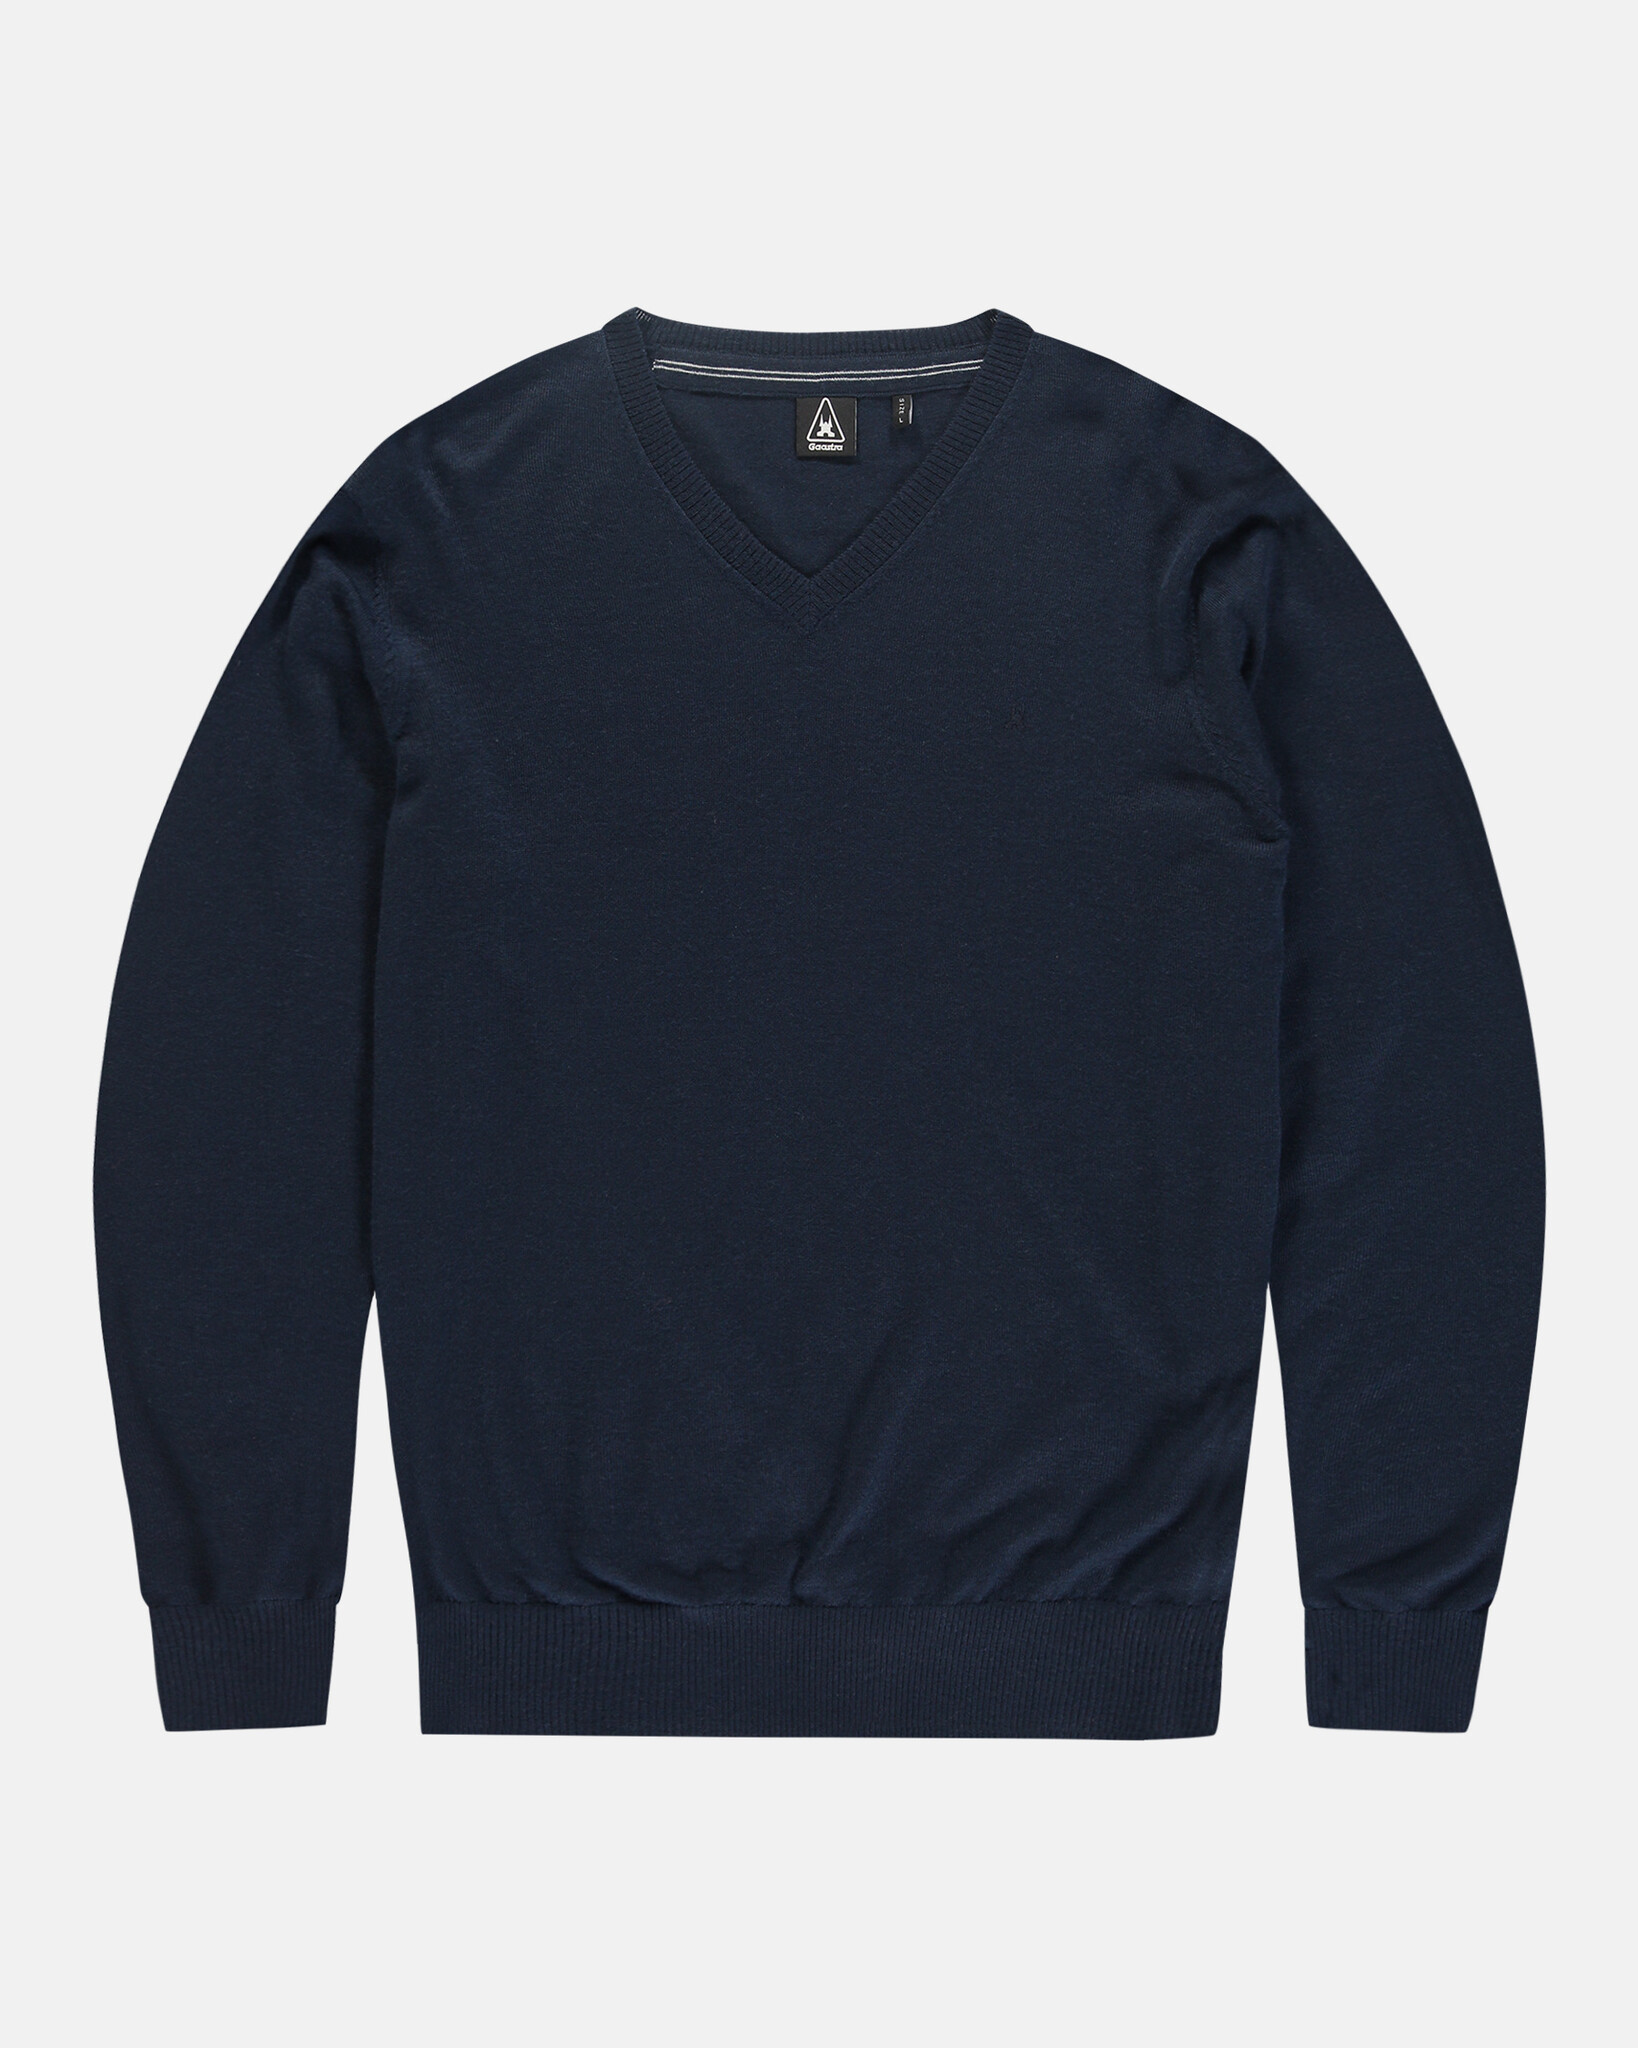 The soft 100% Merino Wool Cagliari V pullover